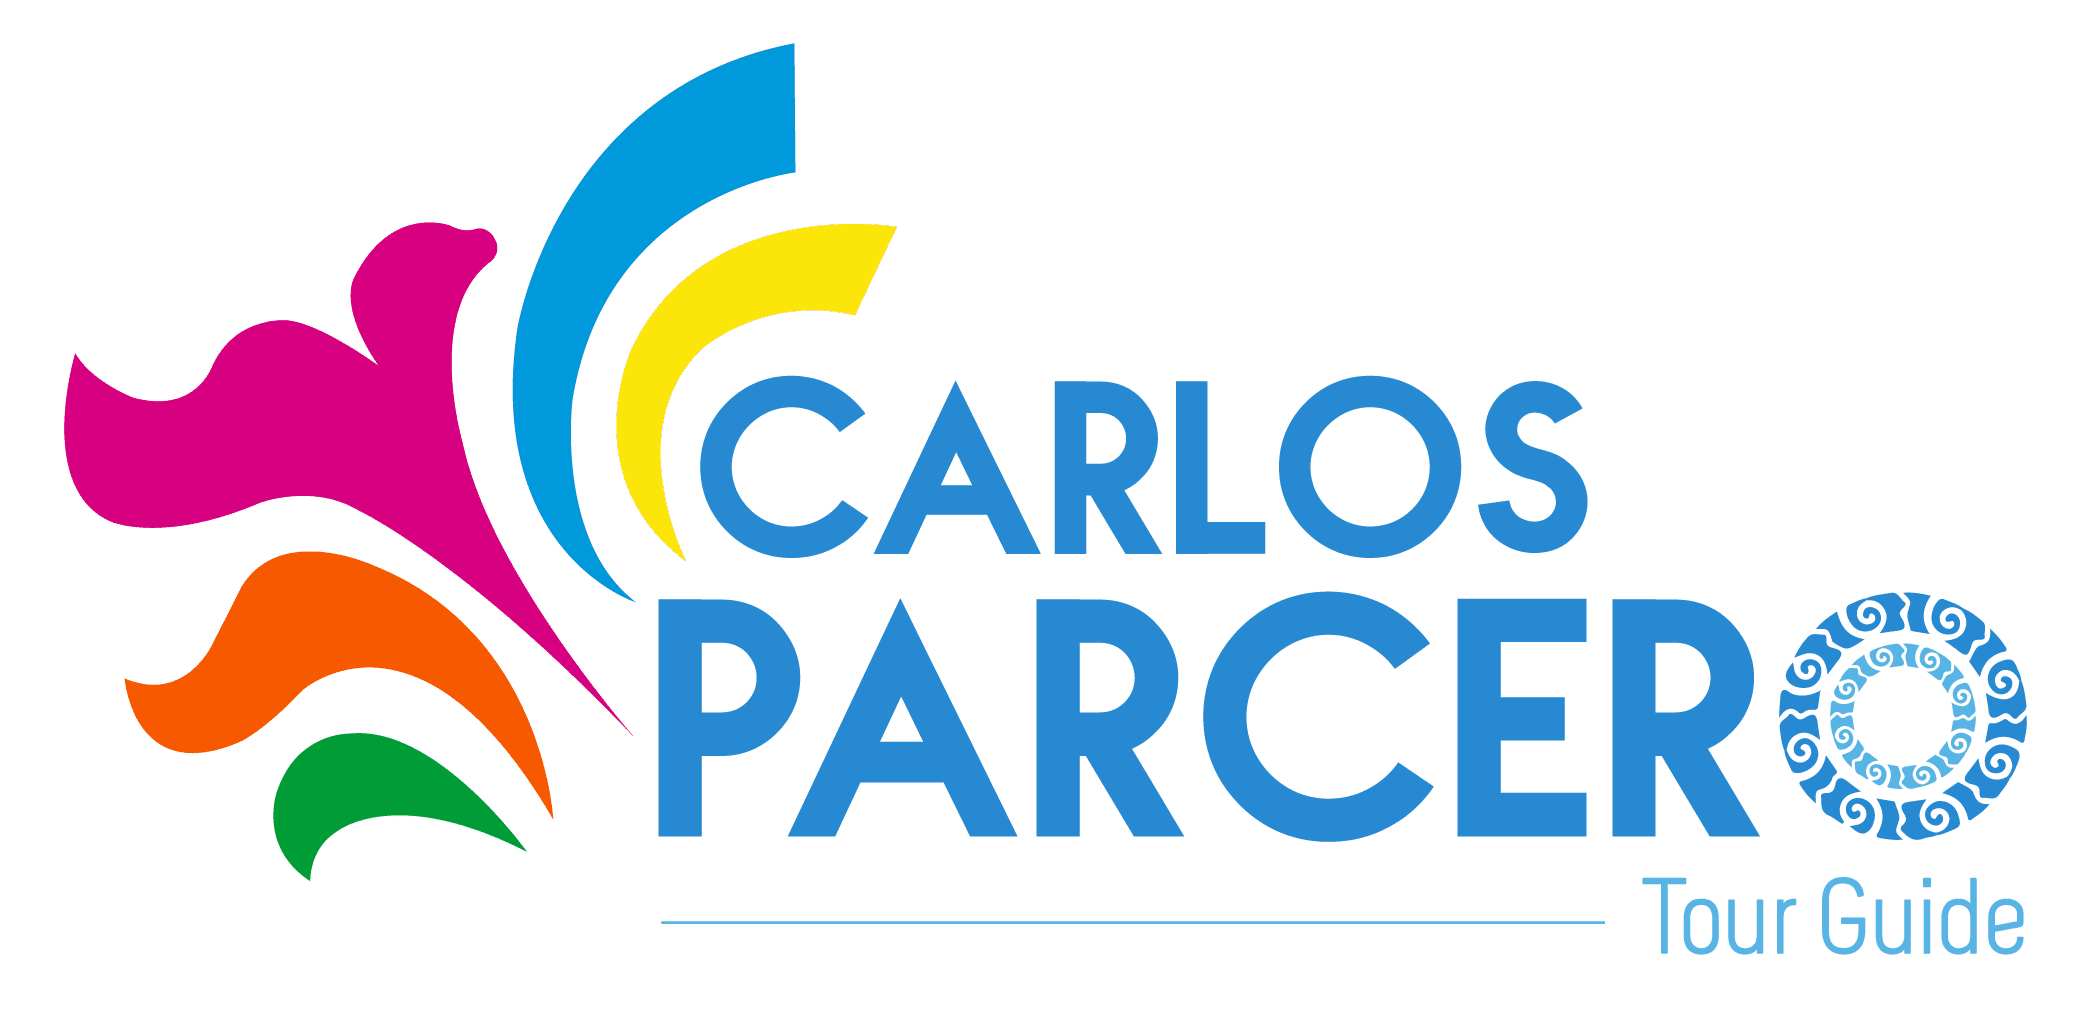 Carlos Parcero Tour Guide